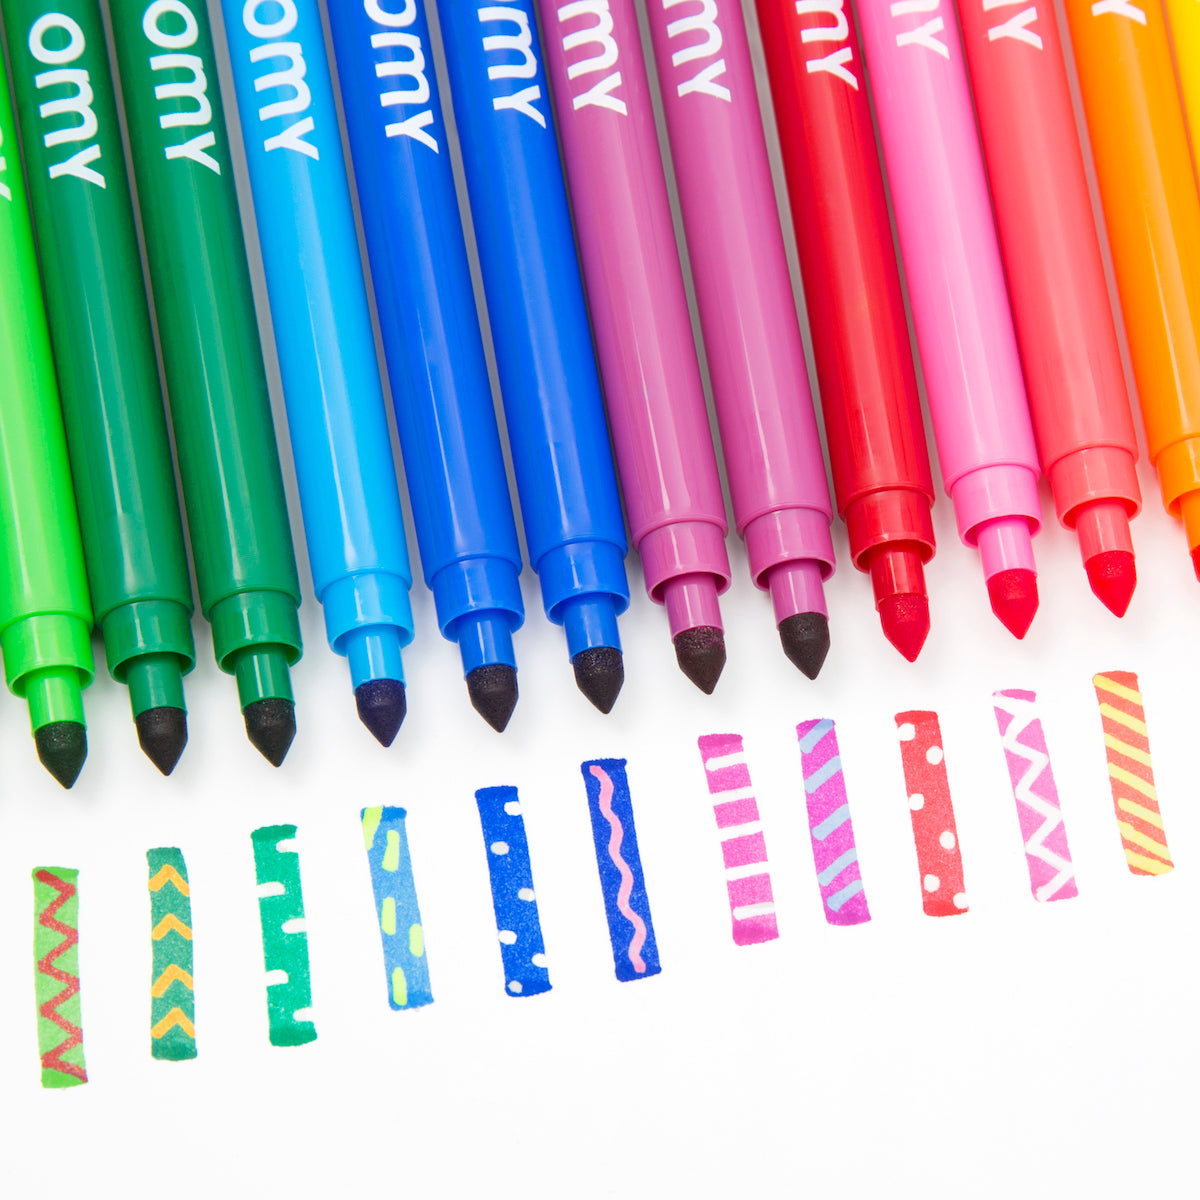 Deze OMY magische vilstiften zijn super cool! De kleuren kunnen veranderen of verdwijnen met behulp van speciale witte pennen. Maak een kunstwerk, ga hier overheen met de witte pen en zie de magie verschijnen! VanZus.